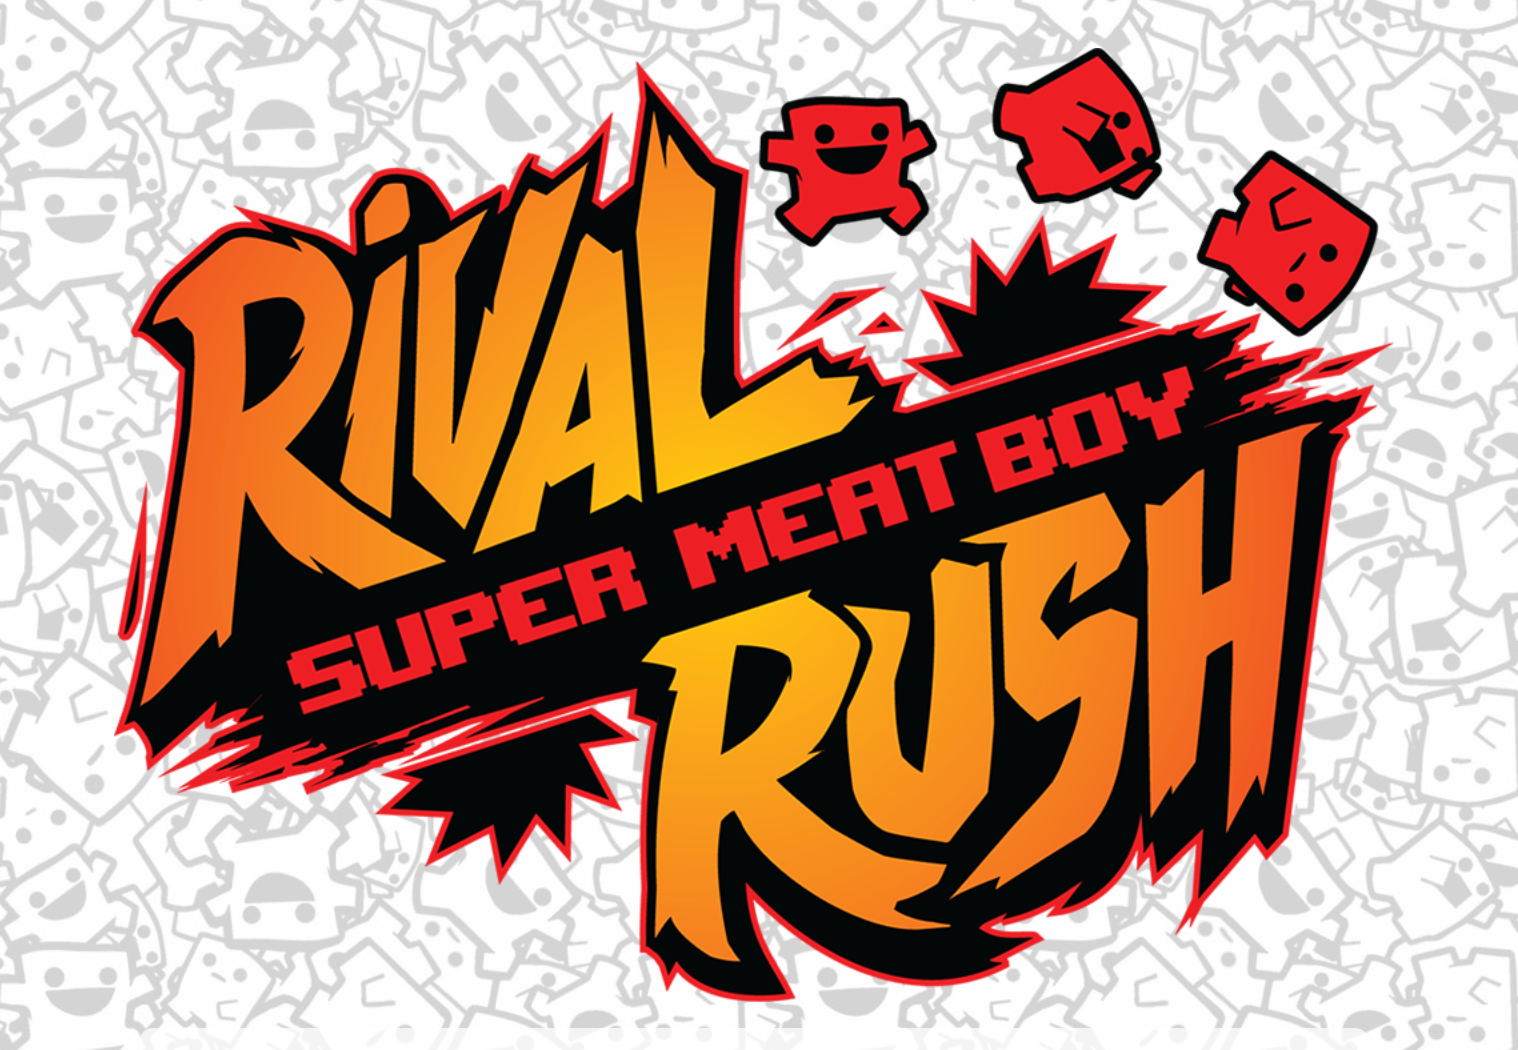 Super Meat Boy -pelissä on nyt fyysinen korttipeli nimeltä Rival Rush